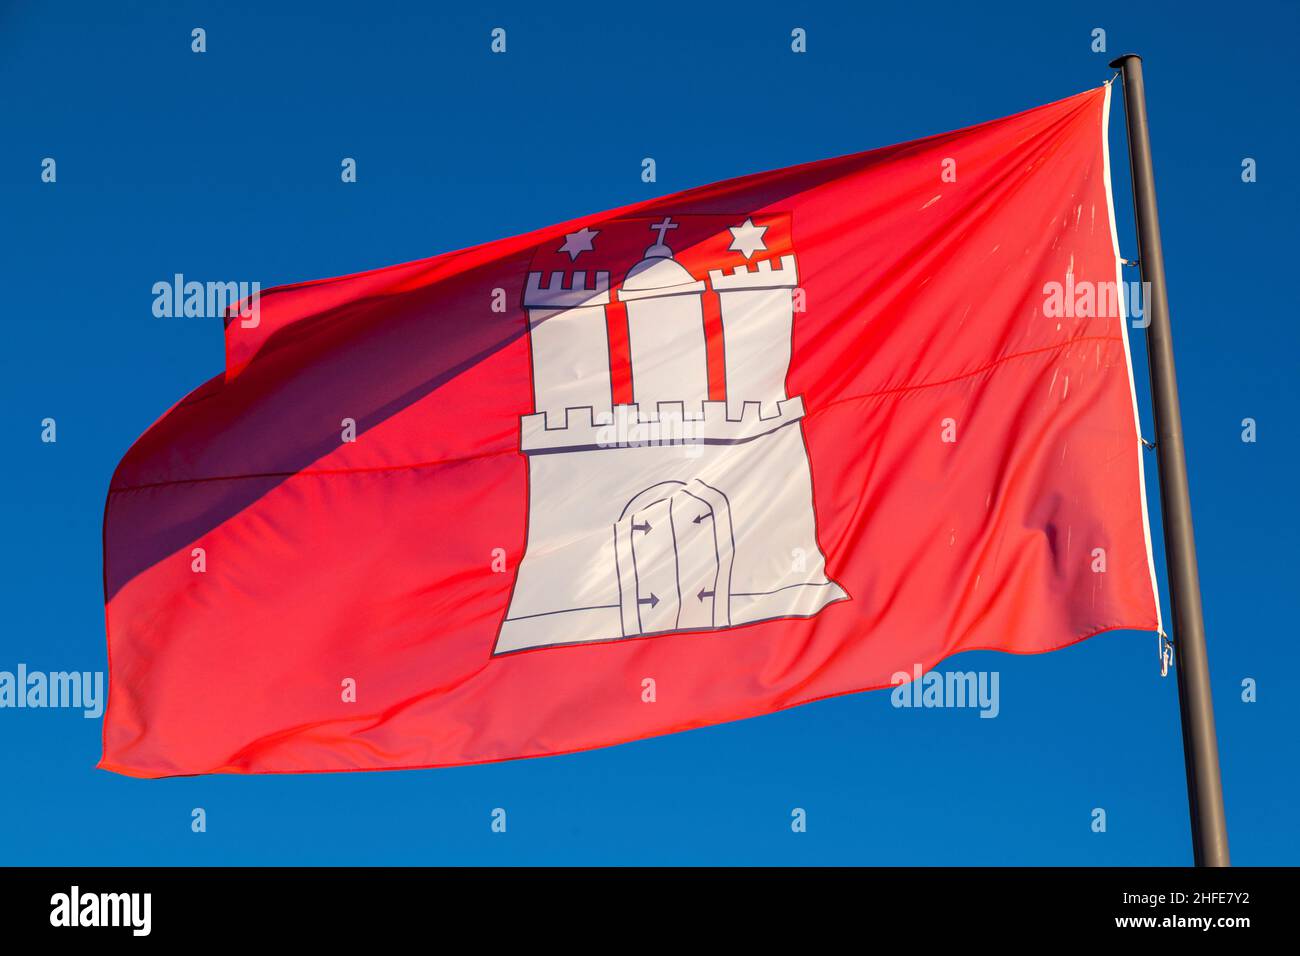 civil flag of Hamburg Stock Photo